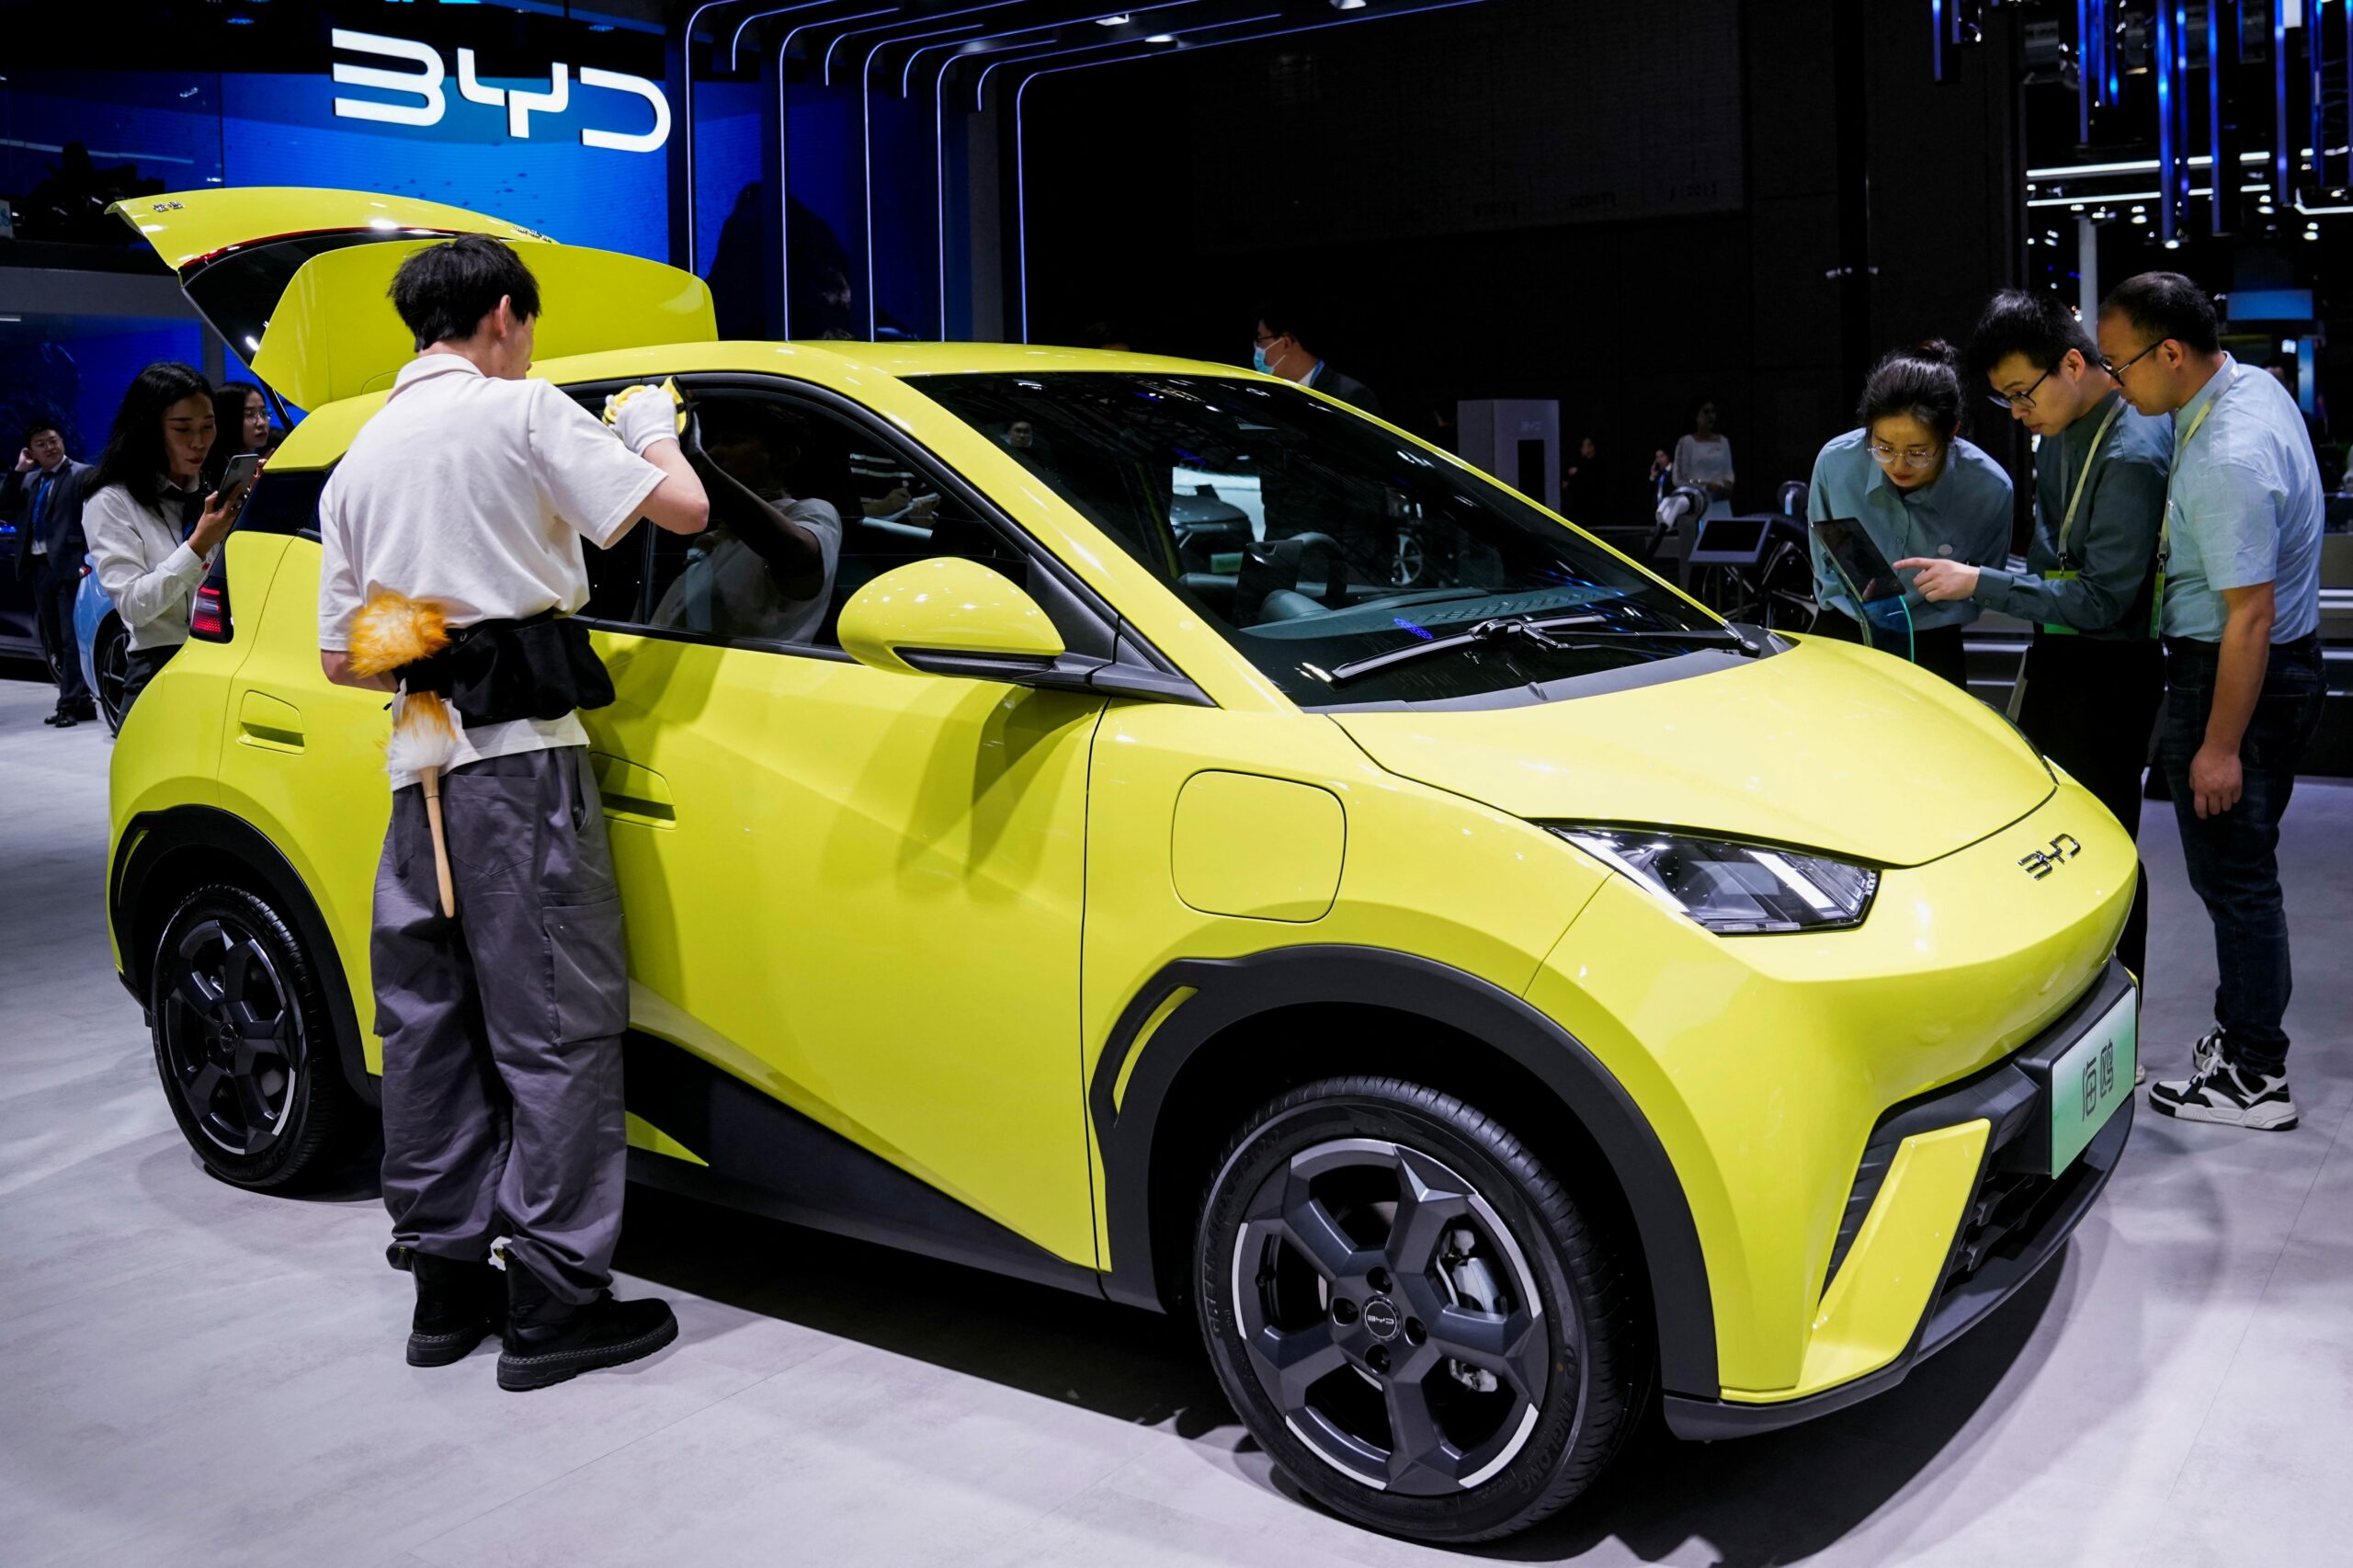 中国电动汽车制造商比亚迪今年的销量即将超过特斯拉。以下是它如何赢得与埃隆·马斯克的竞争。 - 自动博客